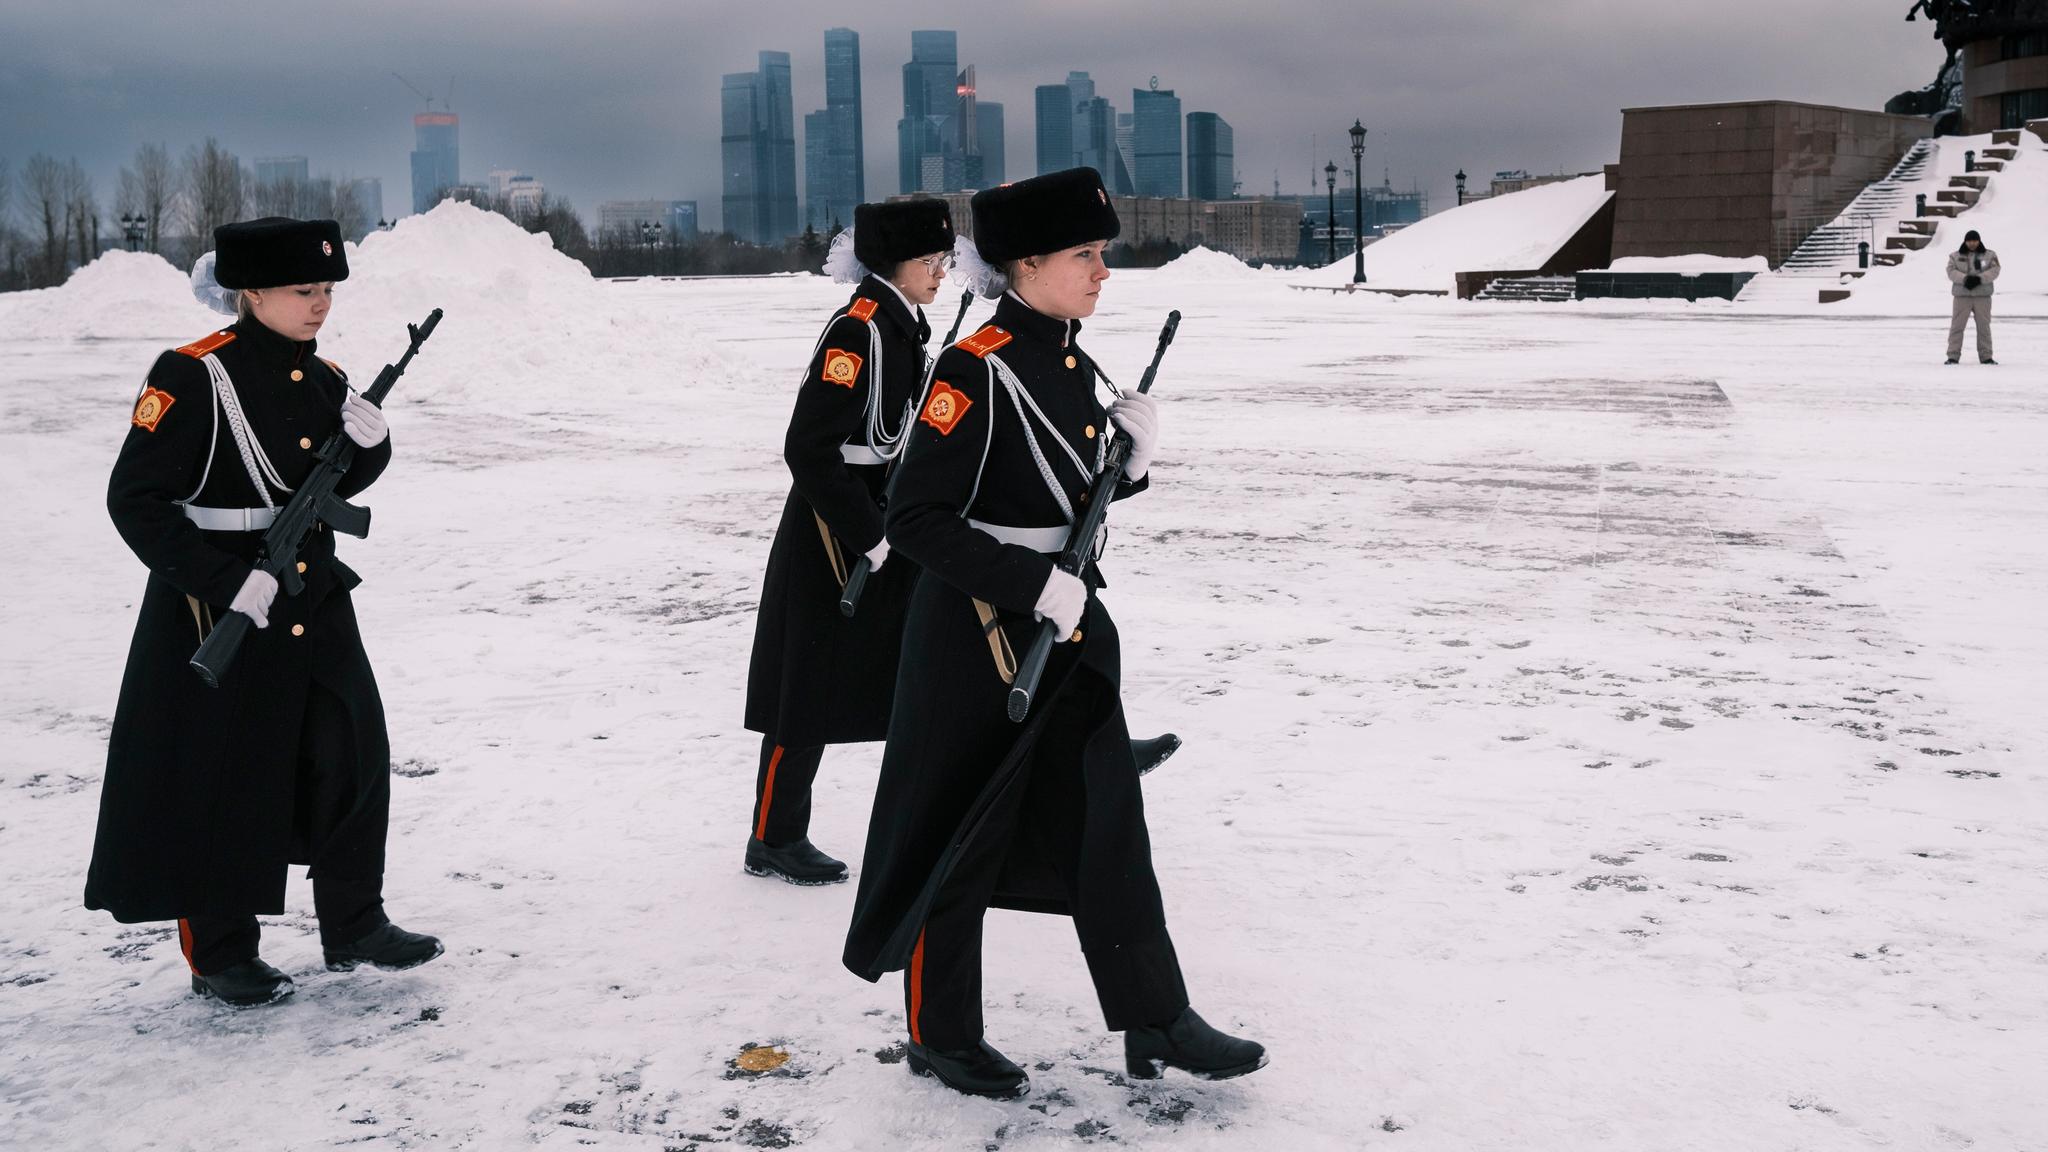 14-åringene marsjerer og skyter med gevær. Det kan bli farlig for Putin.